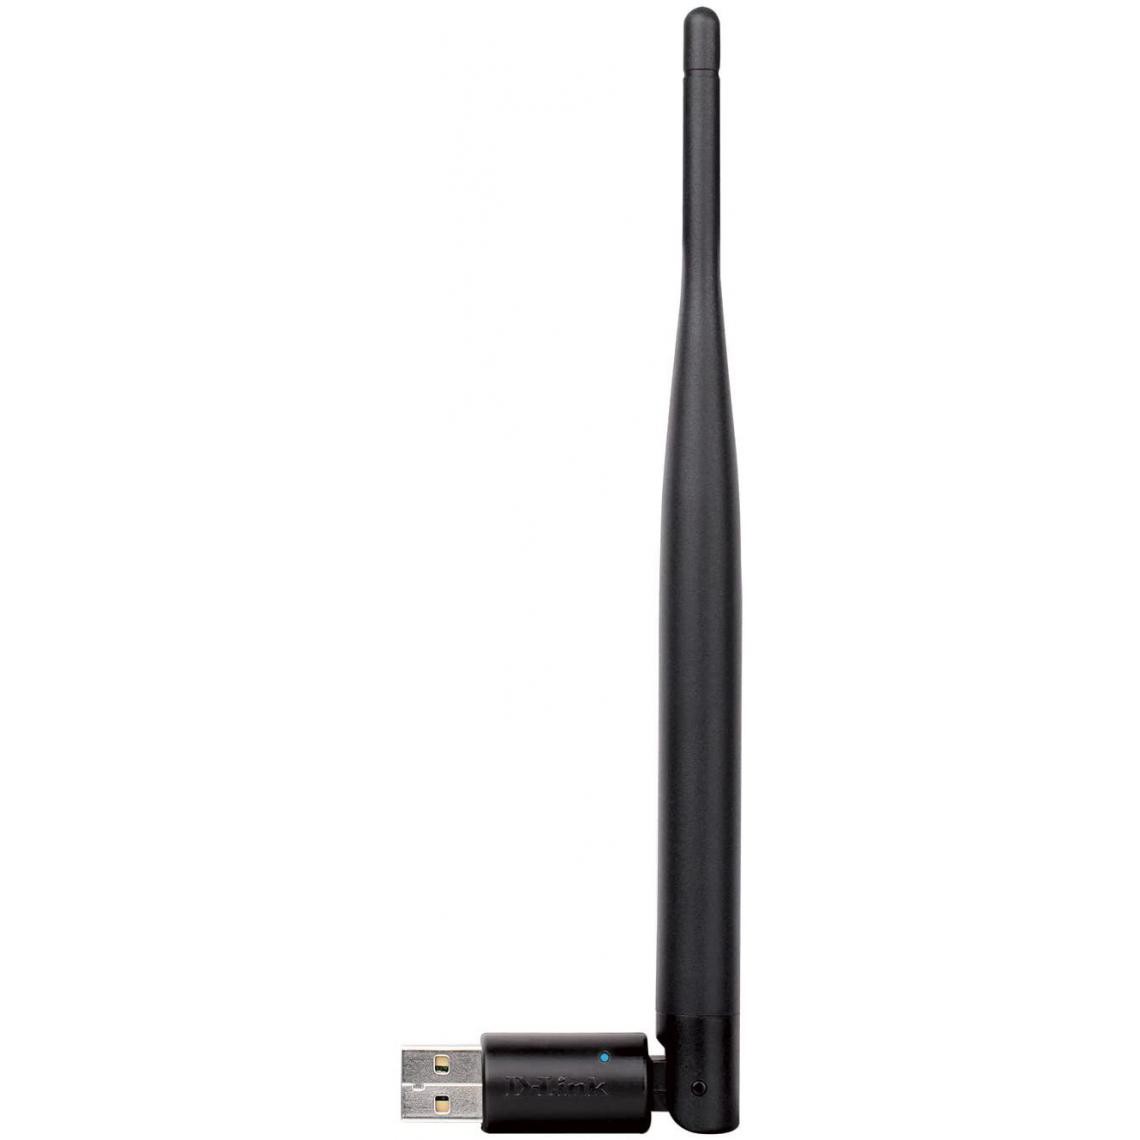 D-Link - Adaptateur USB Wireless N 150 à haut gain - DWA-127 - Clé USB Wifi